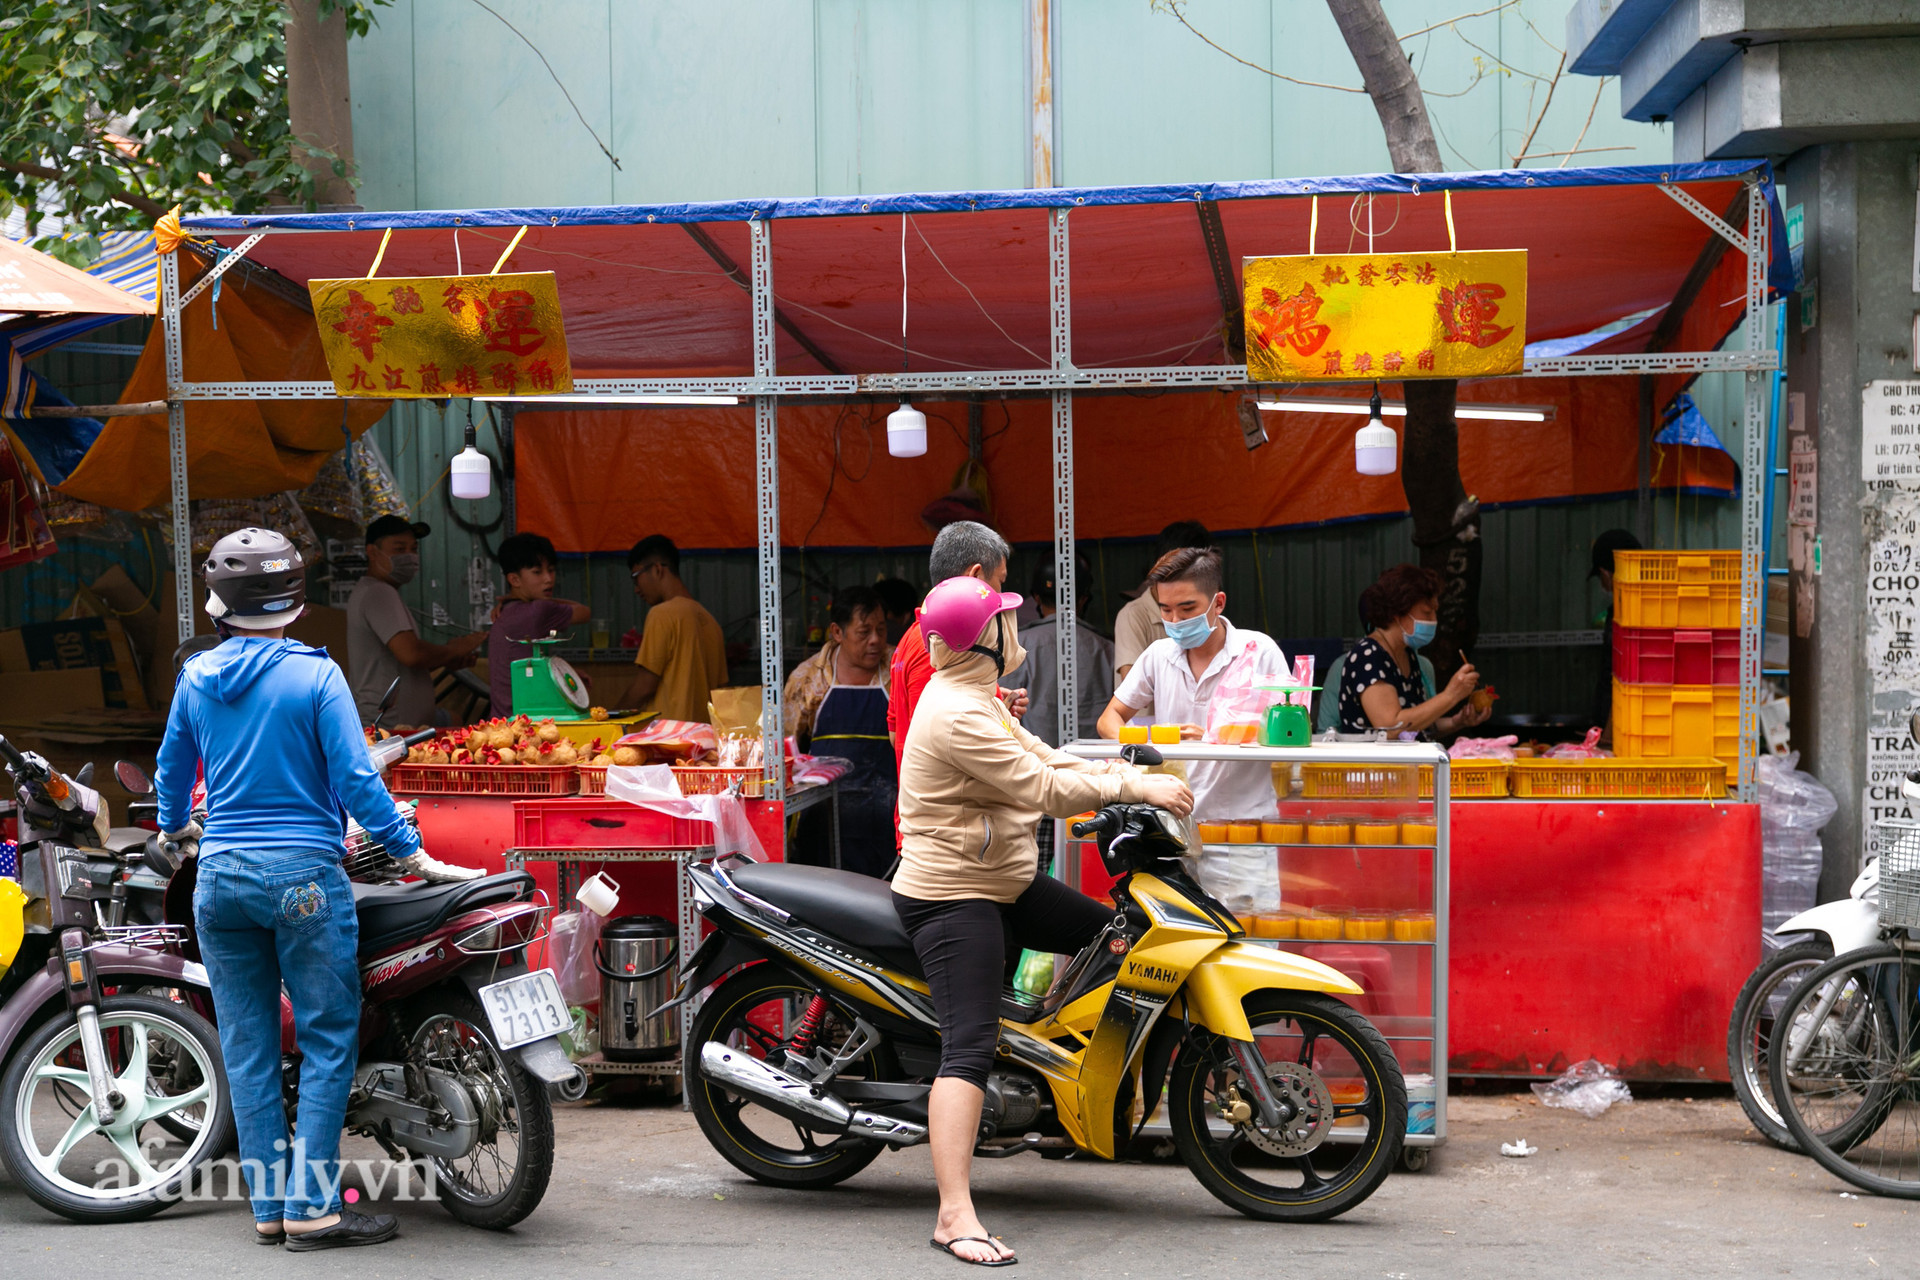 Độc đáo bánh lựu cầu duyên truyền thống của người Hoa ở Sài Gòn: Chỉ bán duy nhất một lần trong năm, 4 người phụ làm hơn 1.000 cái mà bán sạch trong 1 tiếng - Ảnh 1.